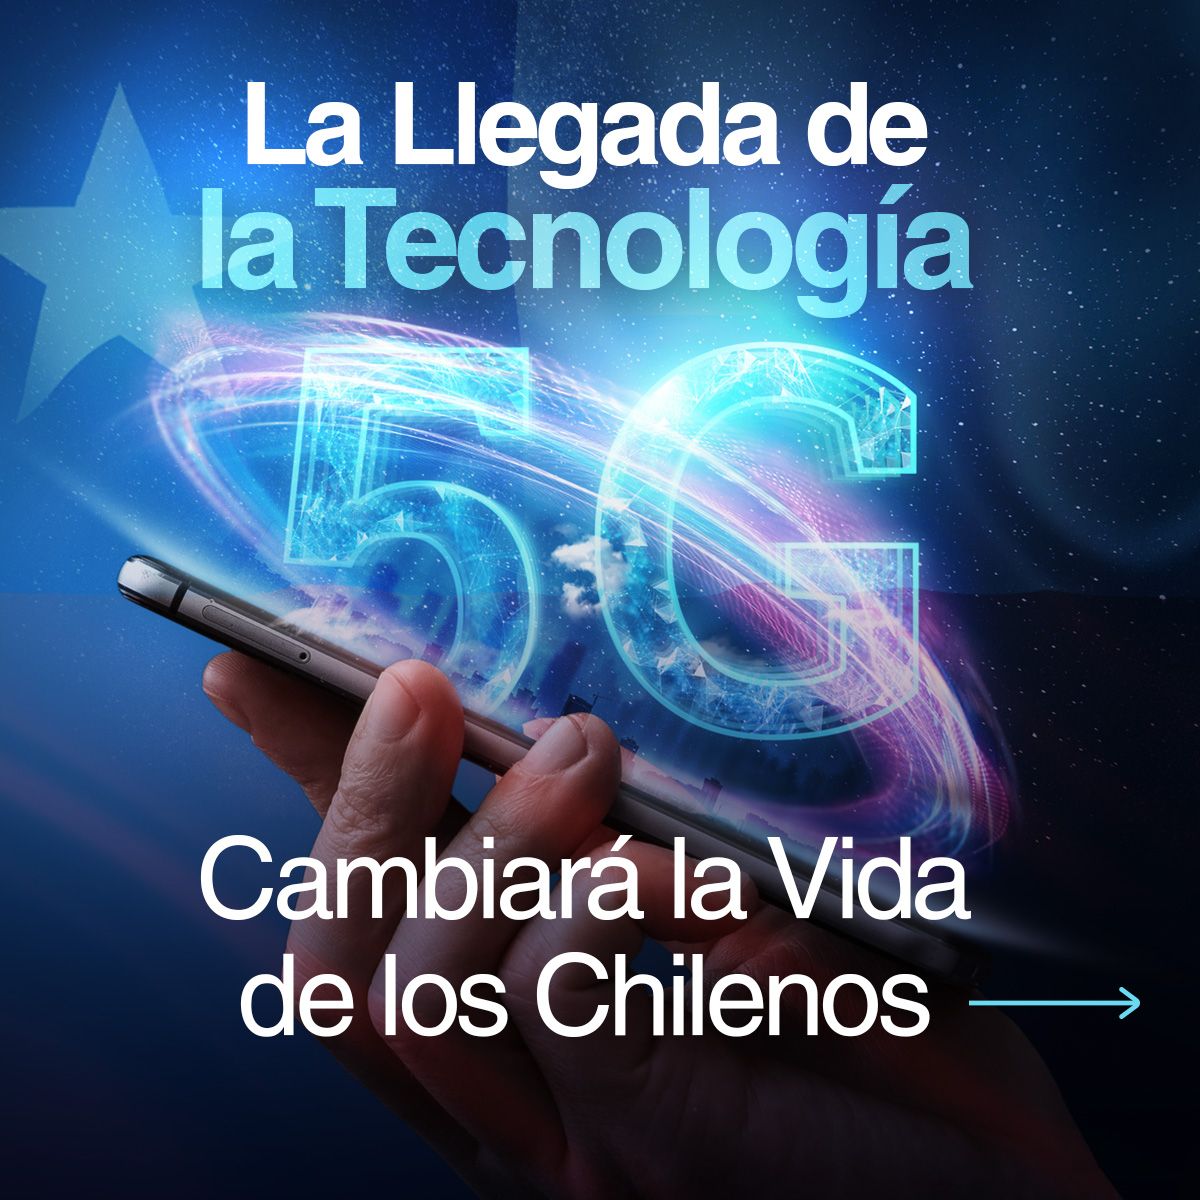 La Tecnología 5G en el País Cambiará la Vida de los Chilenos